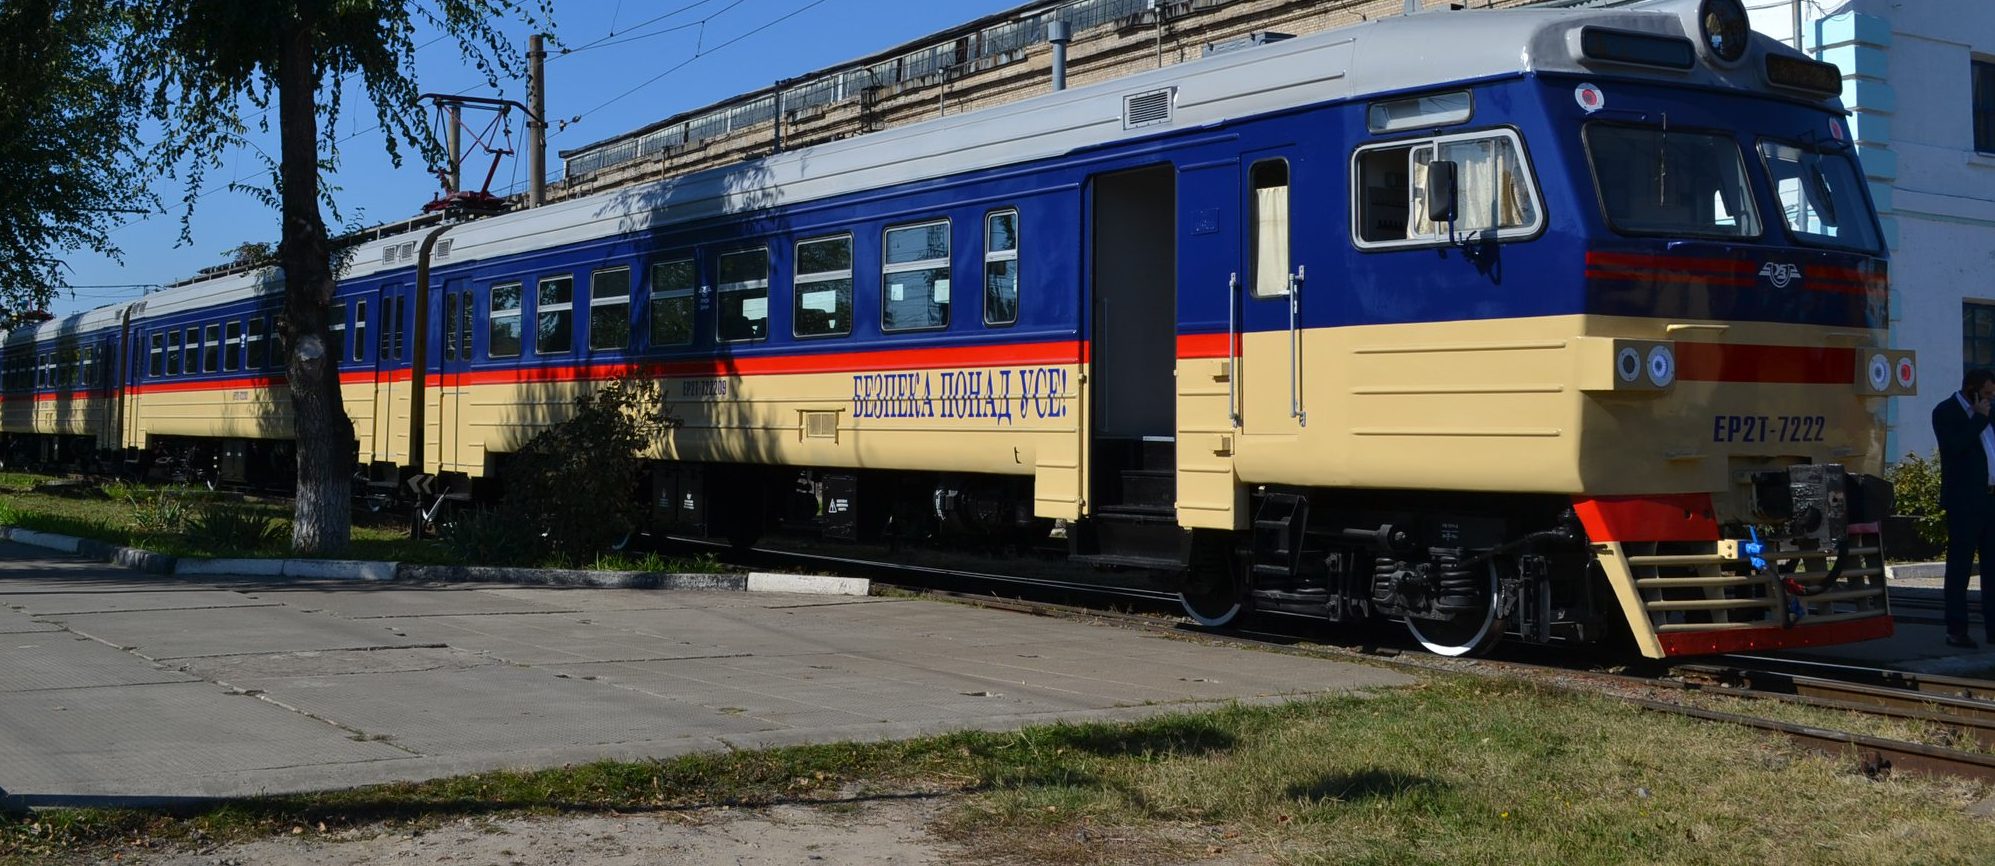 Запорожские пригородные поезда будут временно ходить по новому графику – Индустриалка